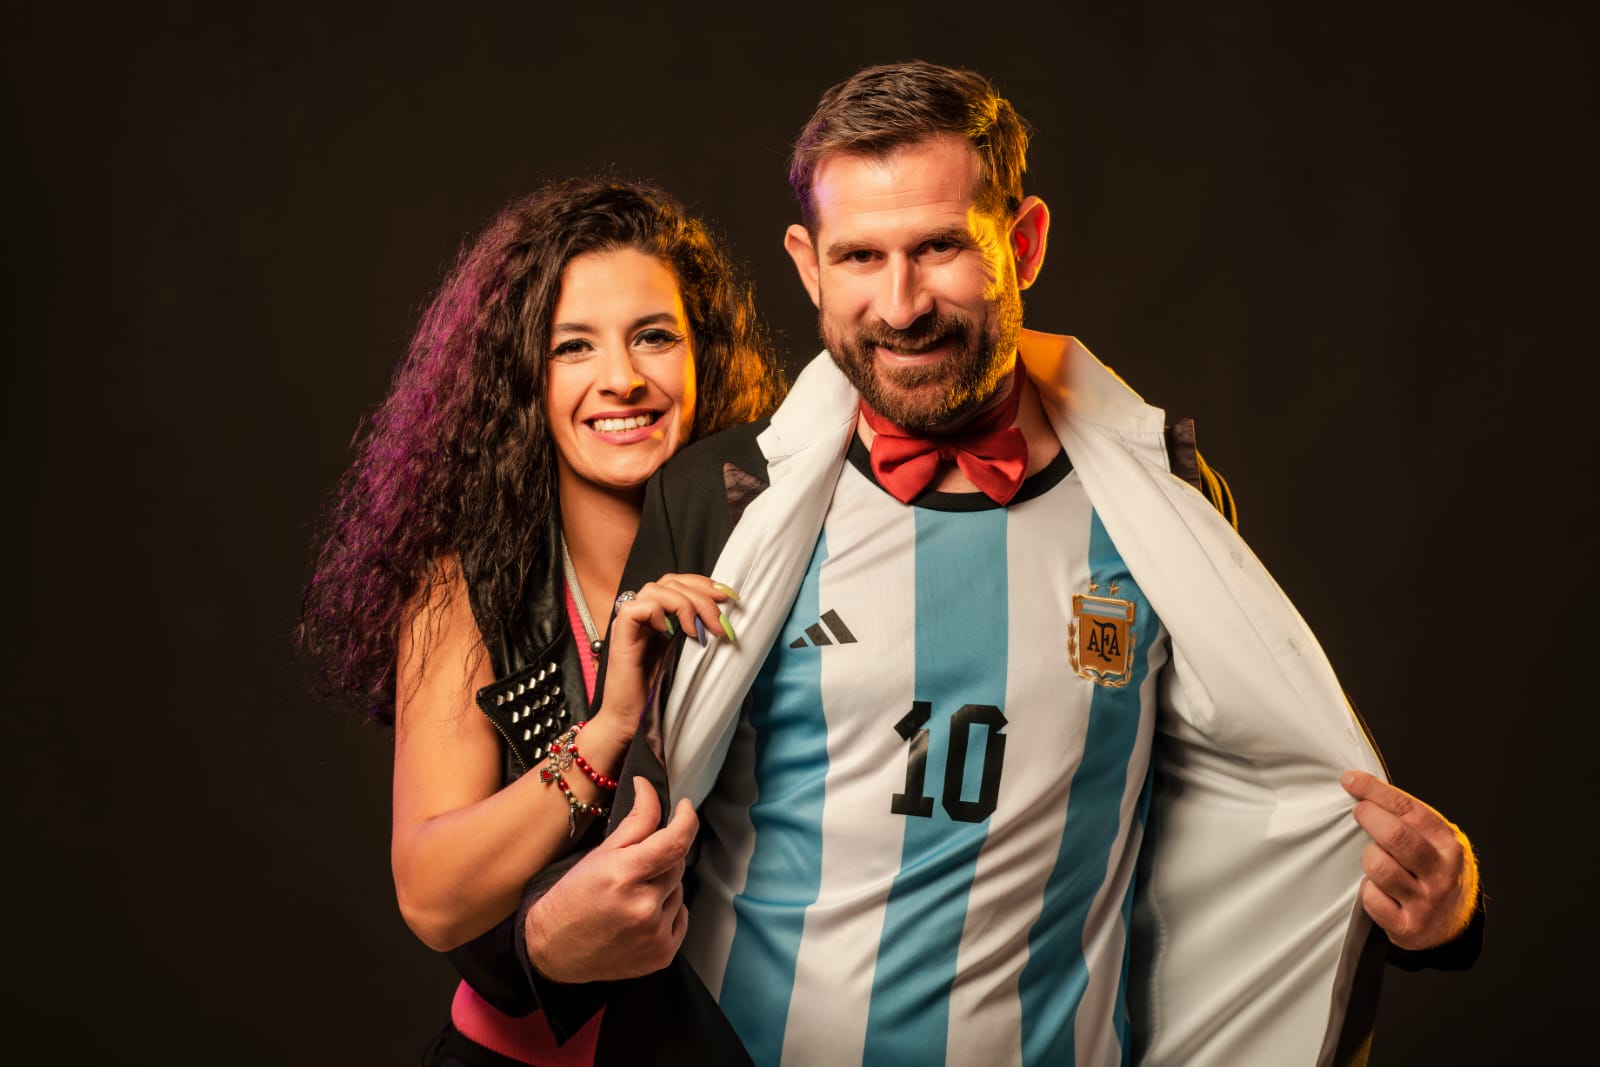 No soy Messi presenta su show: «El sueño del pibe»en Mar del Plata